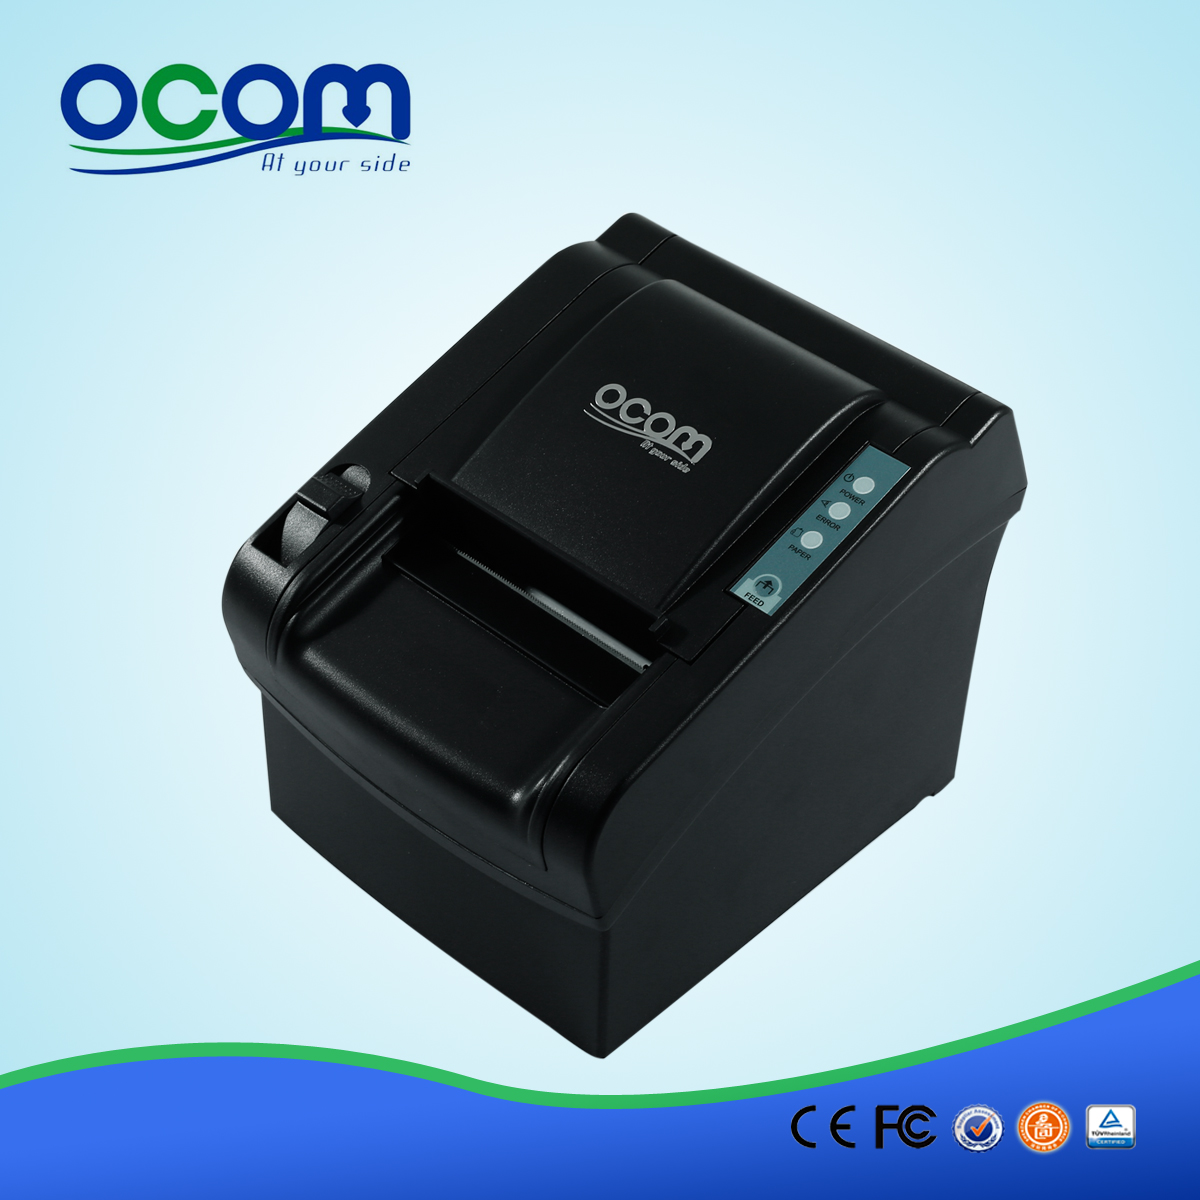 OCPP-802: 80mm de haute qualité tête d'impression thermique, imprimante thermique pos pas cher